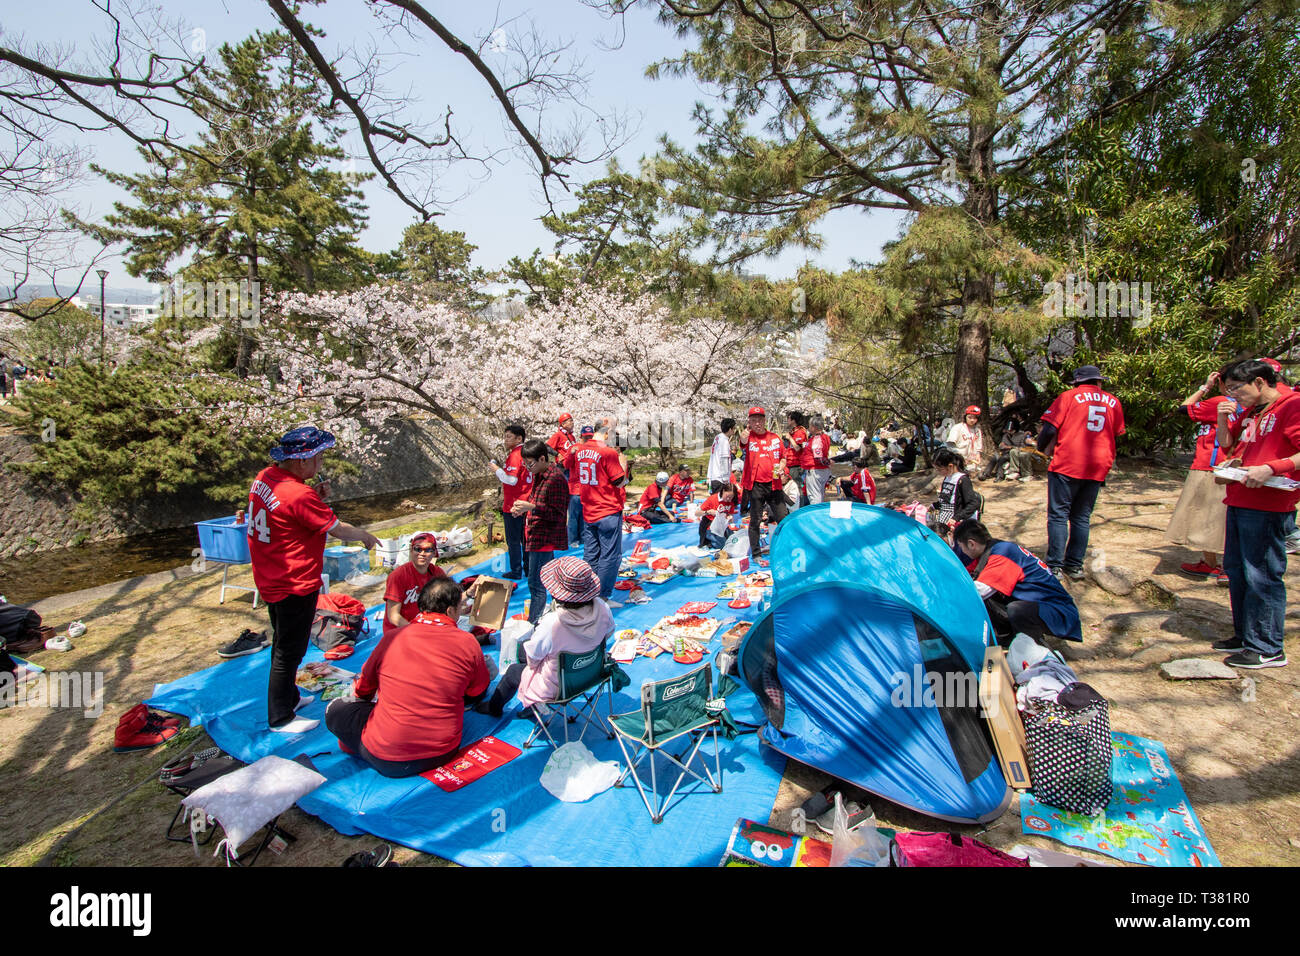 Baseball Team versammelt, ein Picknick unter den Kirschblüten zu haben, "Hana-mi', der in der warmen Frühlingssonne an Shukugawa, in der Nähe der Nishinomiya in Japan. Ein beliebter Aussichtspunkt, mit einer Reihe von Cherry Blossom Bäume auf beiden Seiten des Flusses. Stockfoto